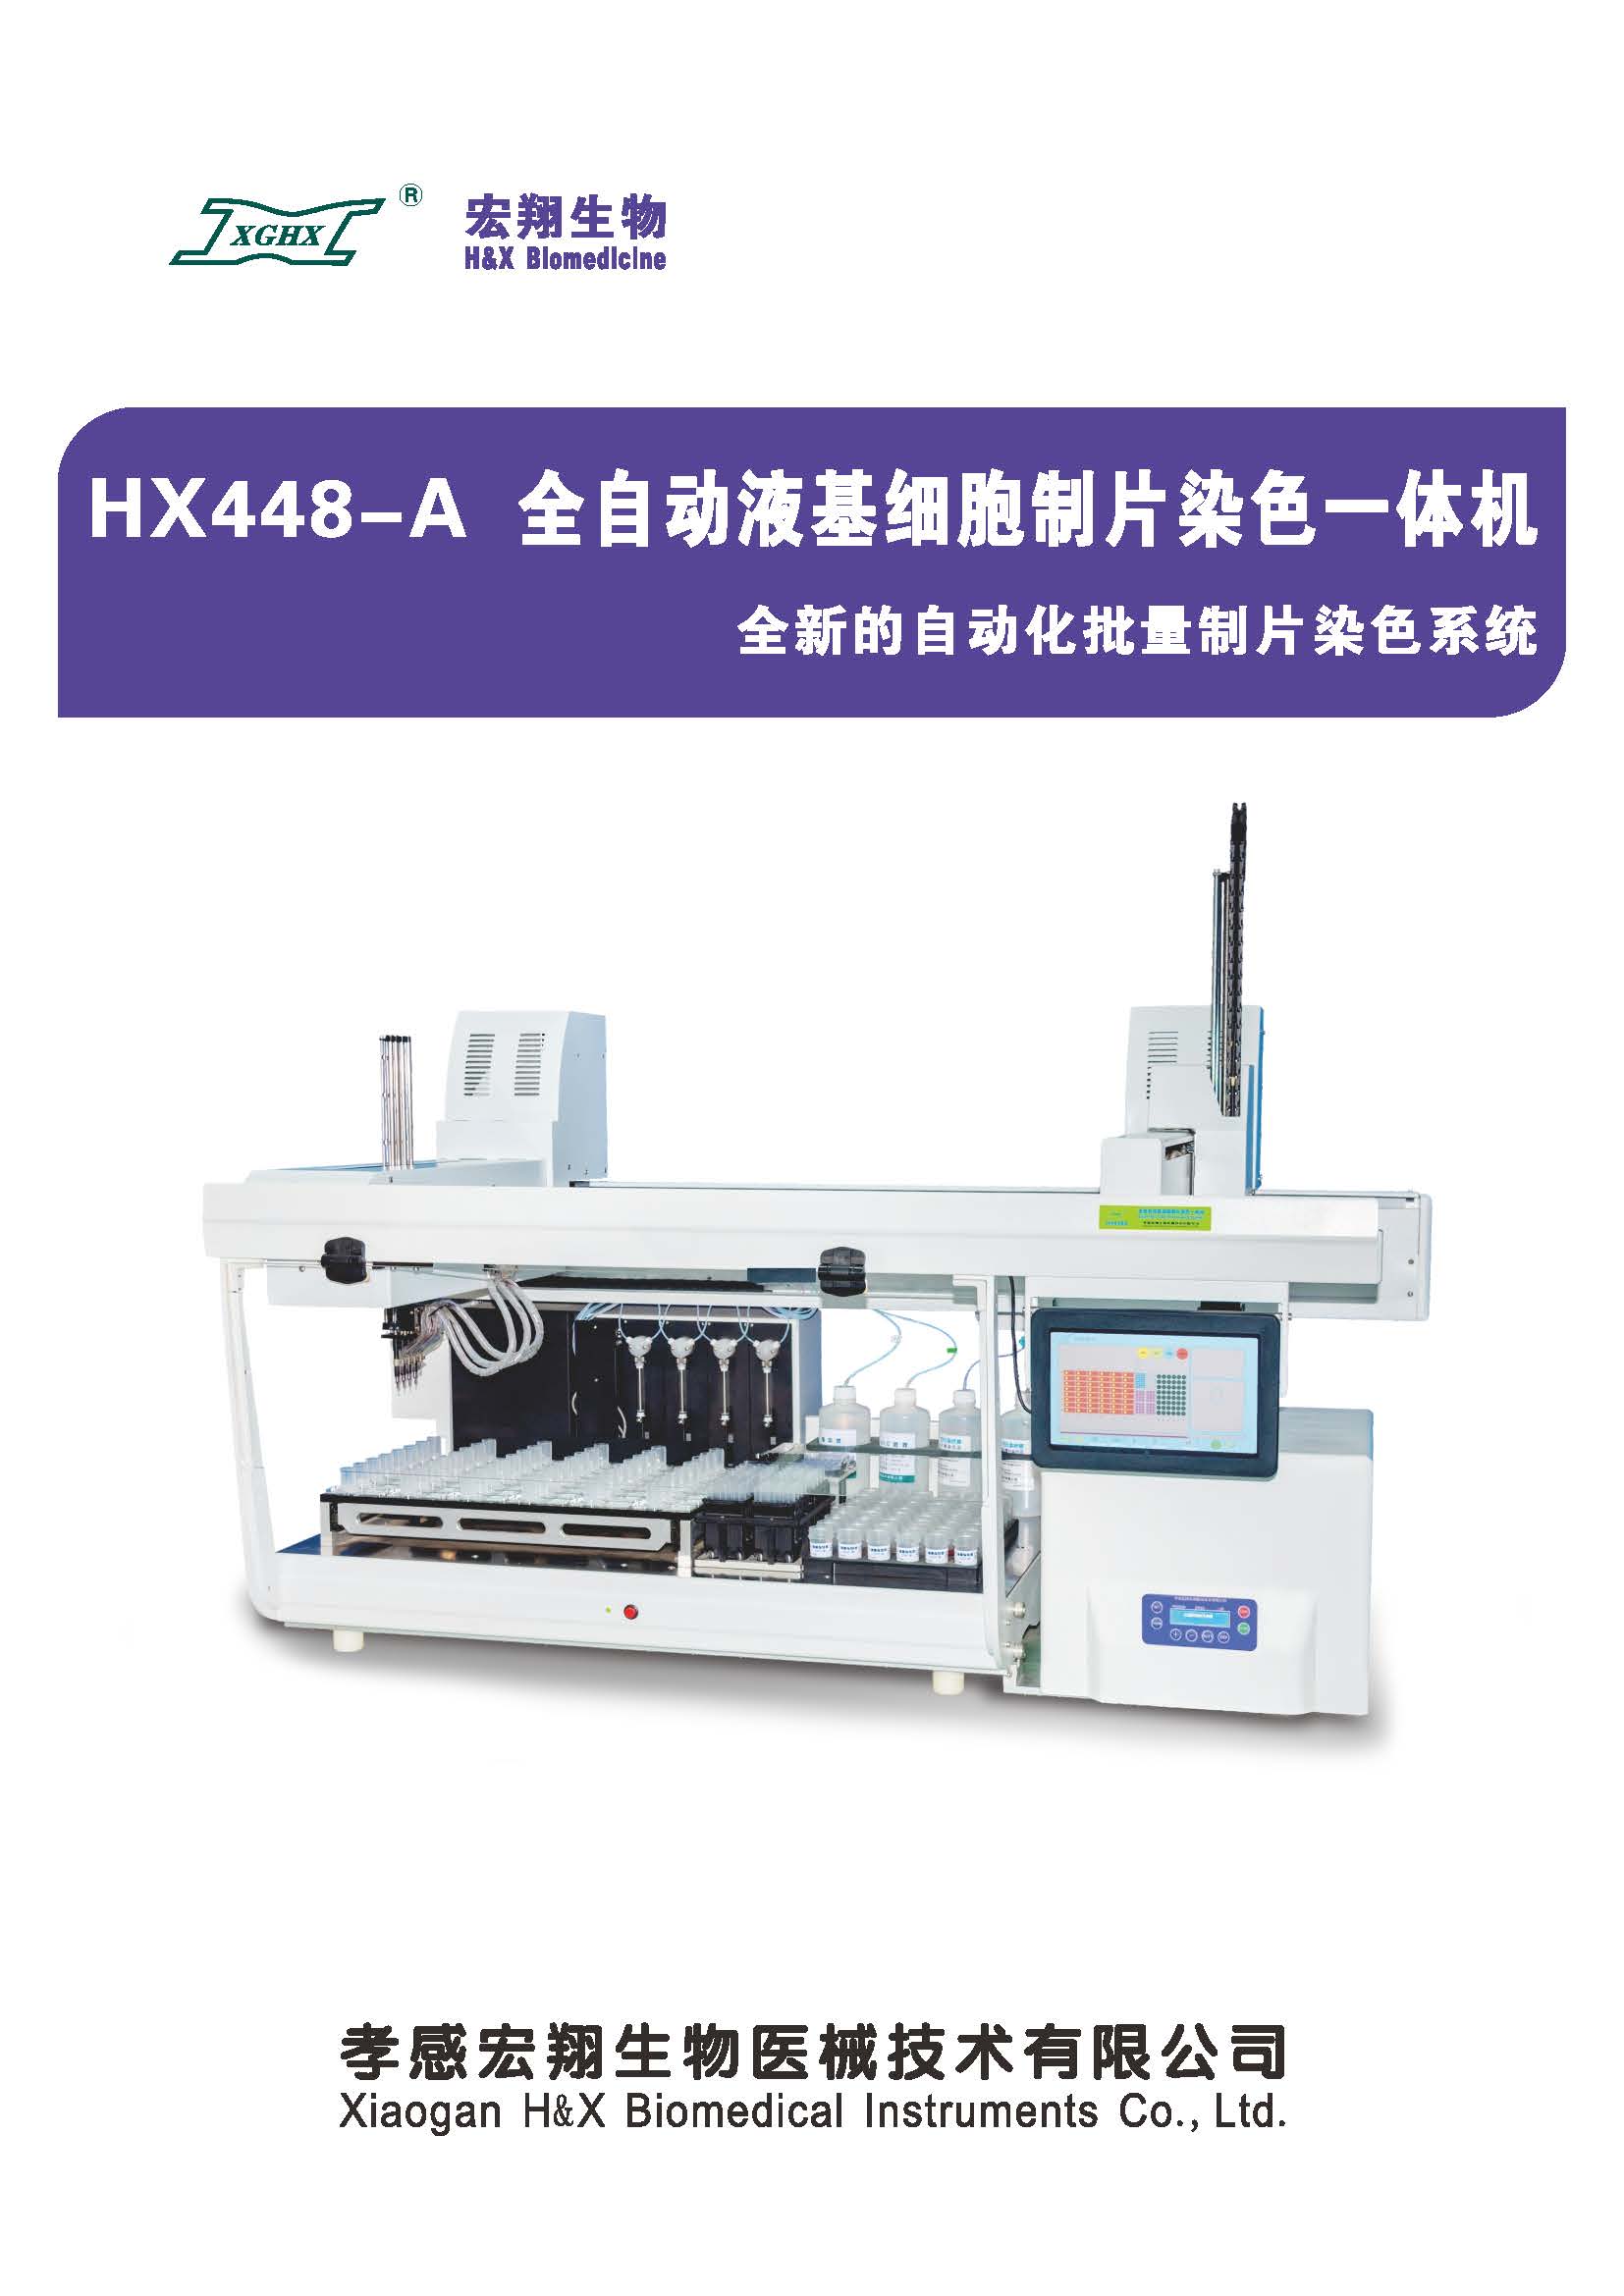 HX448-A全自動液基細胞制片染色一體機